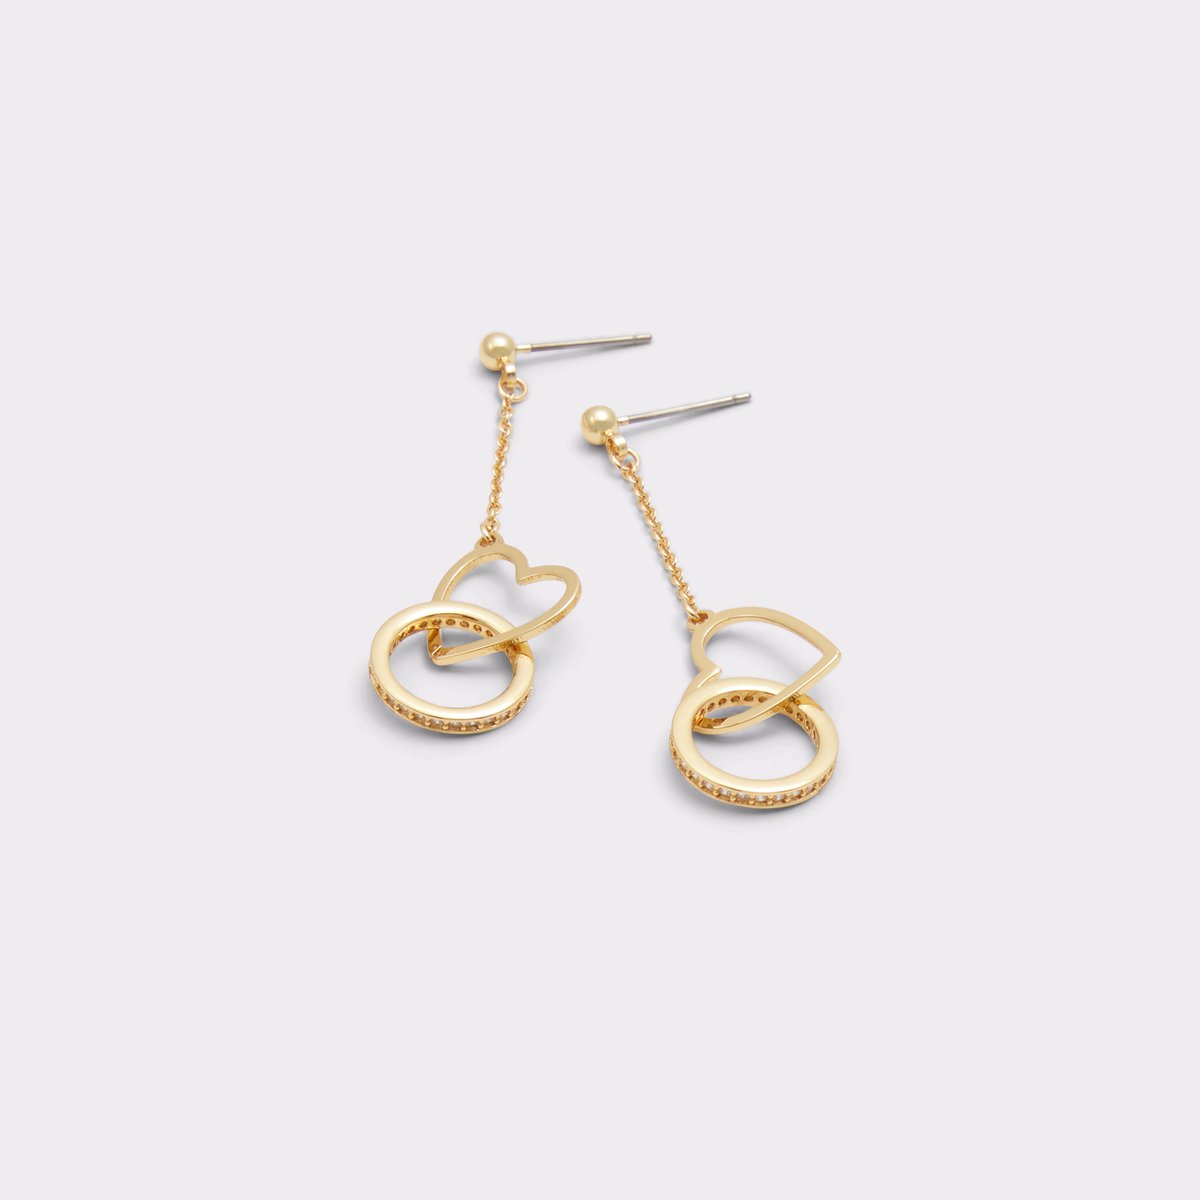 Lovecharm Gold/Clear Multi Women's Earrings | ALDO Canada